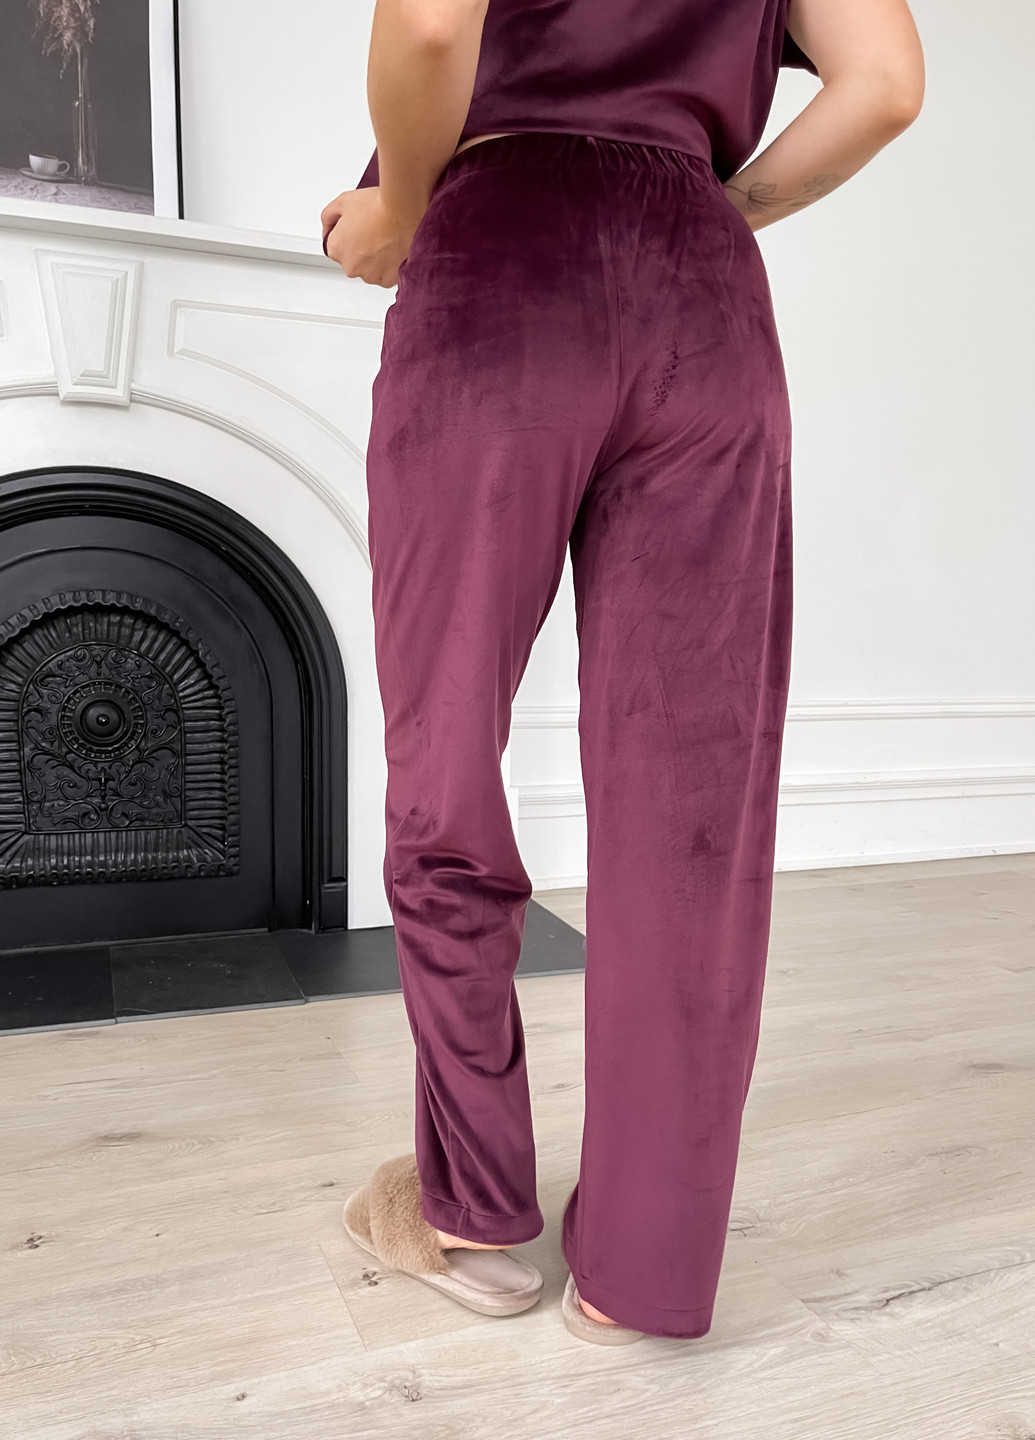 Бордова зимня тепла велюрова жіноча піжама 3: халат, штани, футболка бордового кольору 100000212 кофта + футболка + брюки Merlini Буя